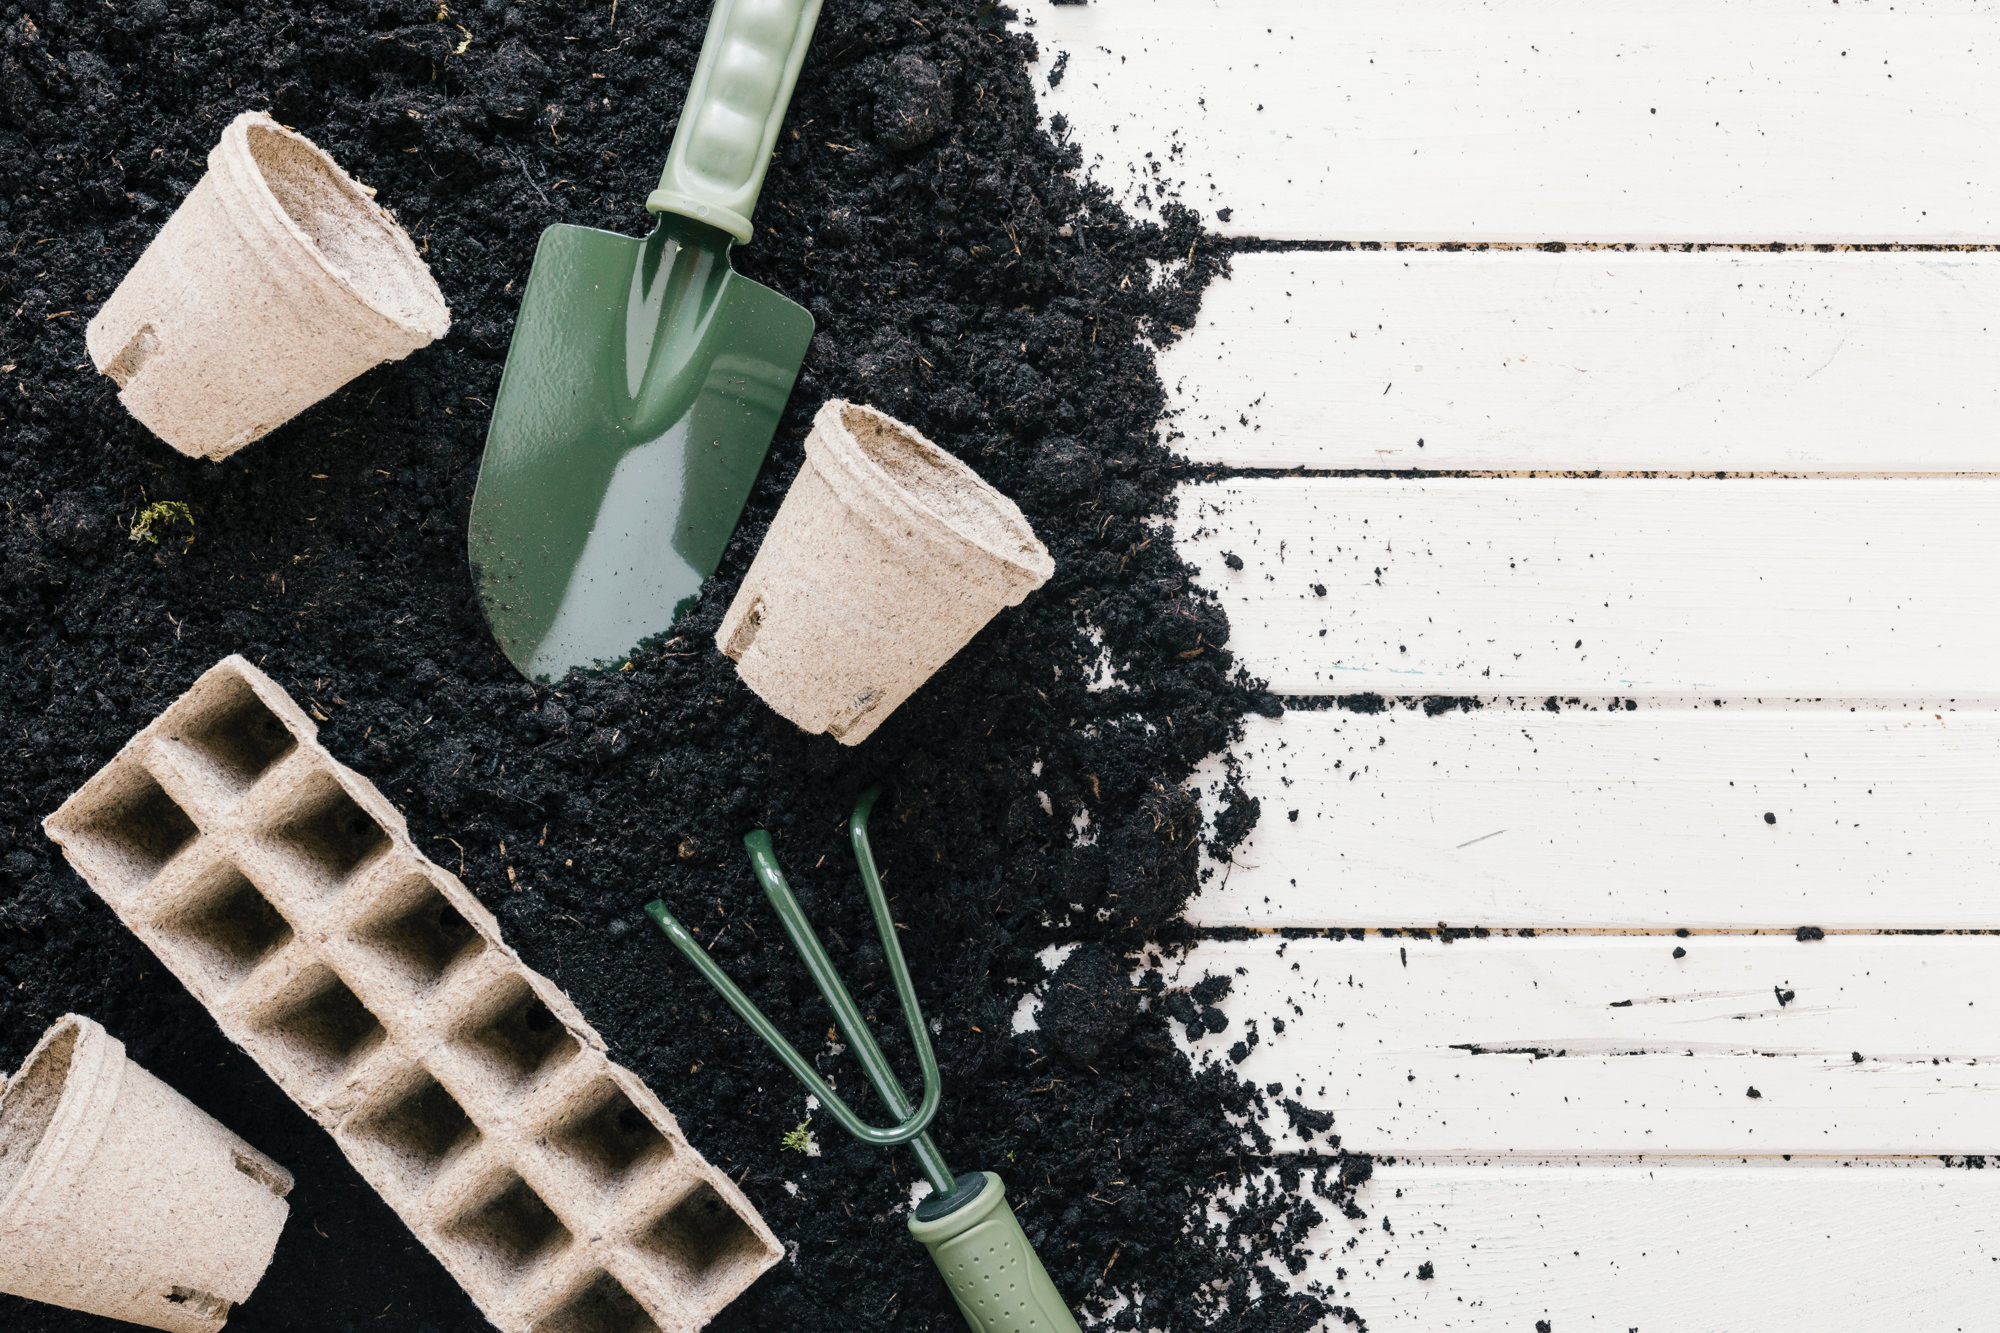 peat-pot-and-peat-tray-black-soil-with-gardening-shovel-gardening-rake-over-wooden-desk.jpg